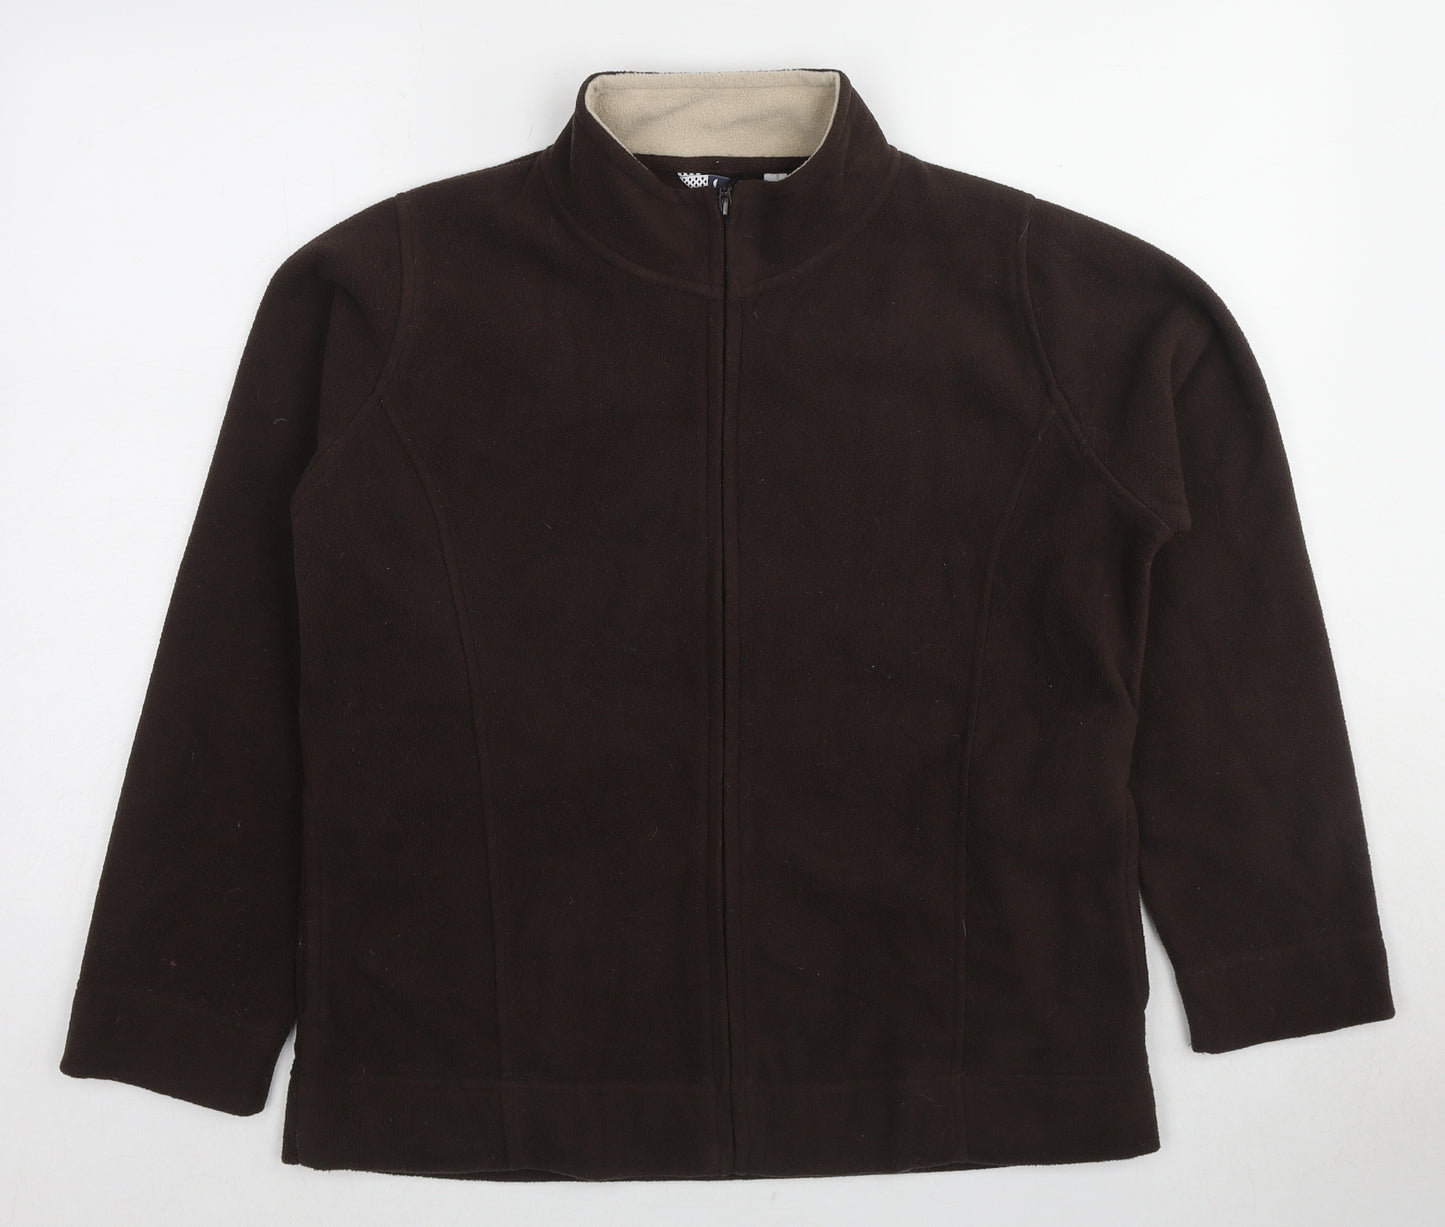 EWM Womens Brown Jacket Size 14 Zip - Size 14-16